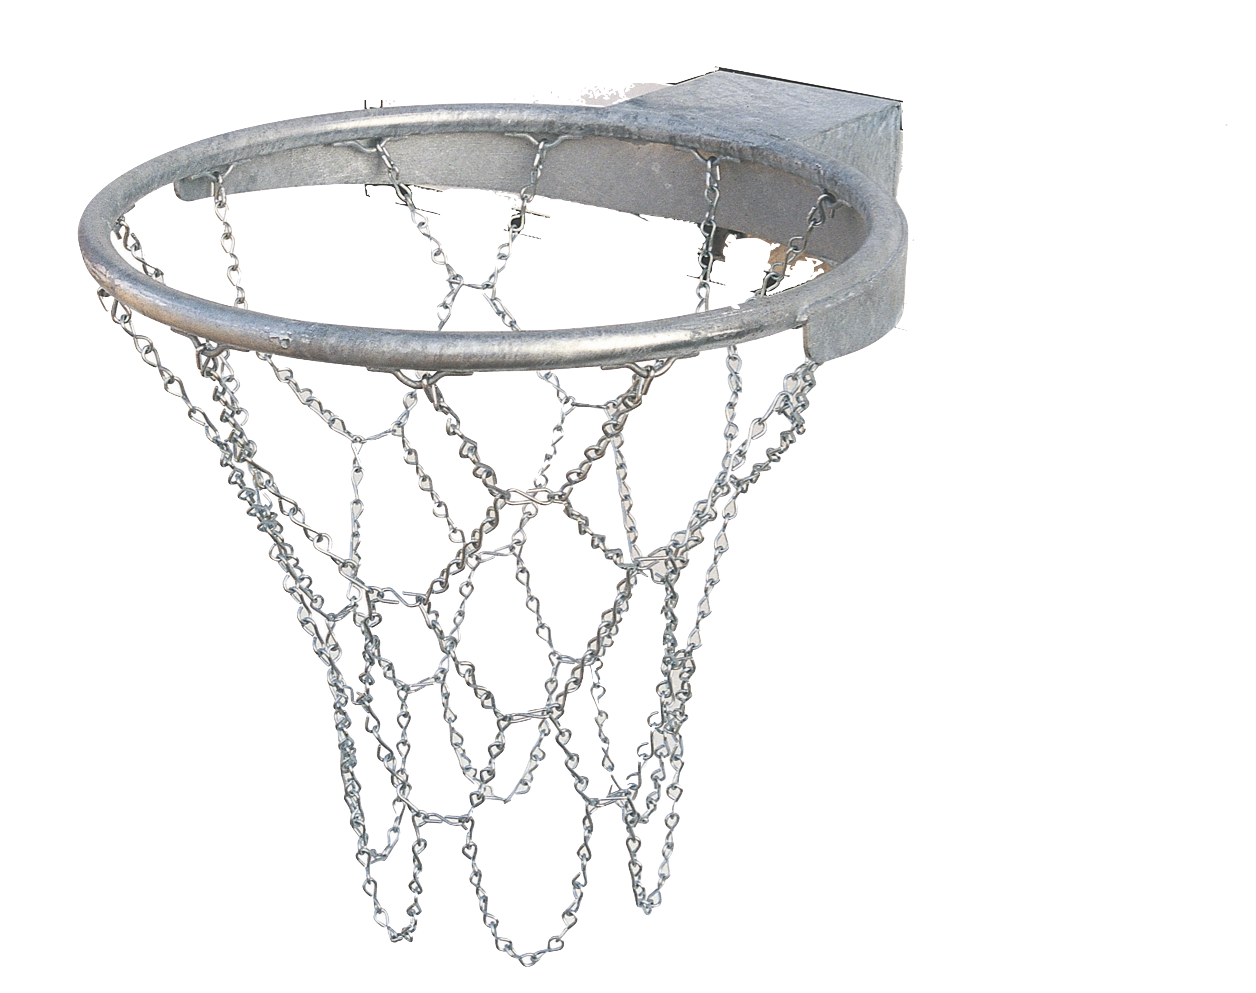 AimdonR Glow Rete da Basket Rete di Ricambio Standard per Tutte Le Condizioni Atmosferiche di Ricambio Standard per Interni o Esterni 